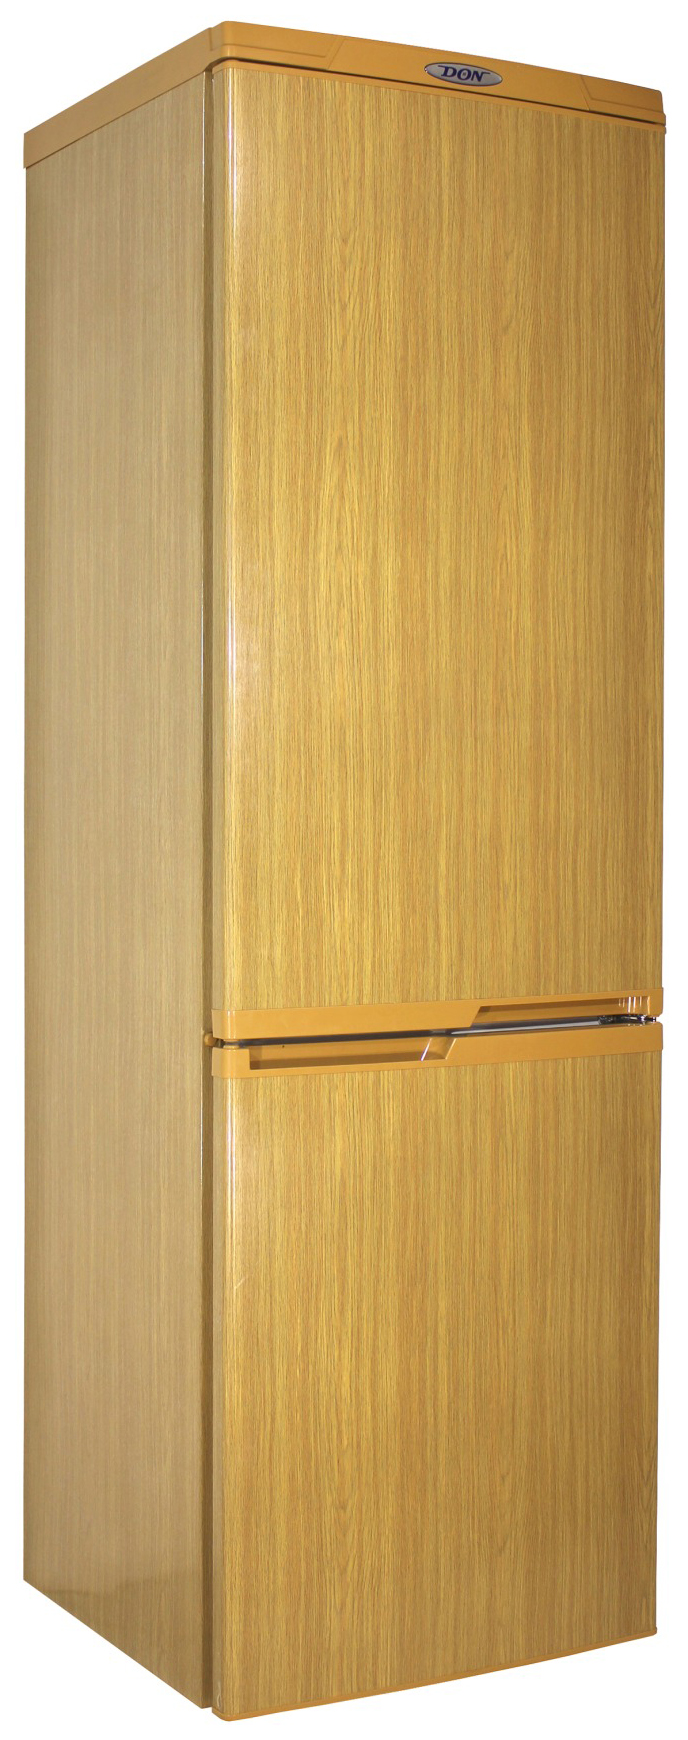 Холодильник DON R 291 DUB коричневый холодильник tesler rc 73 коричневый